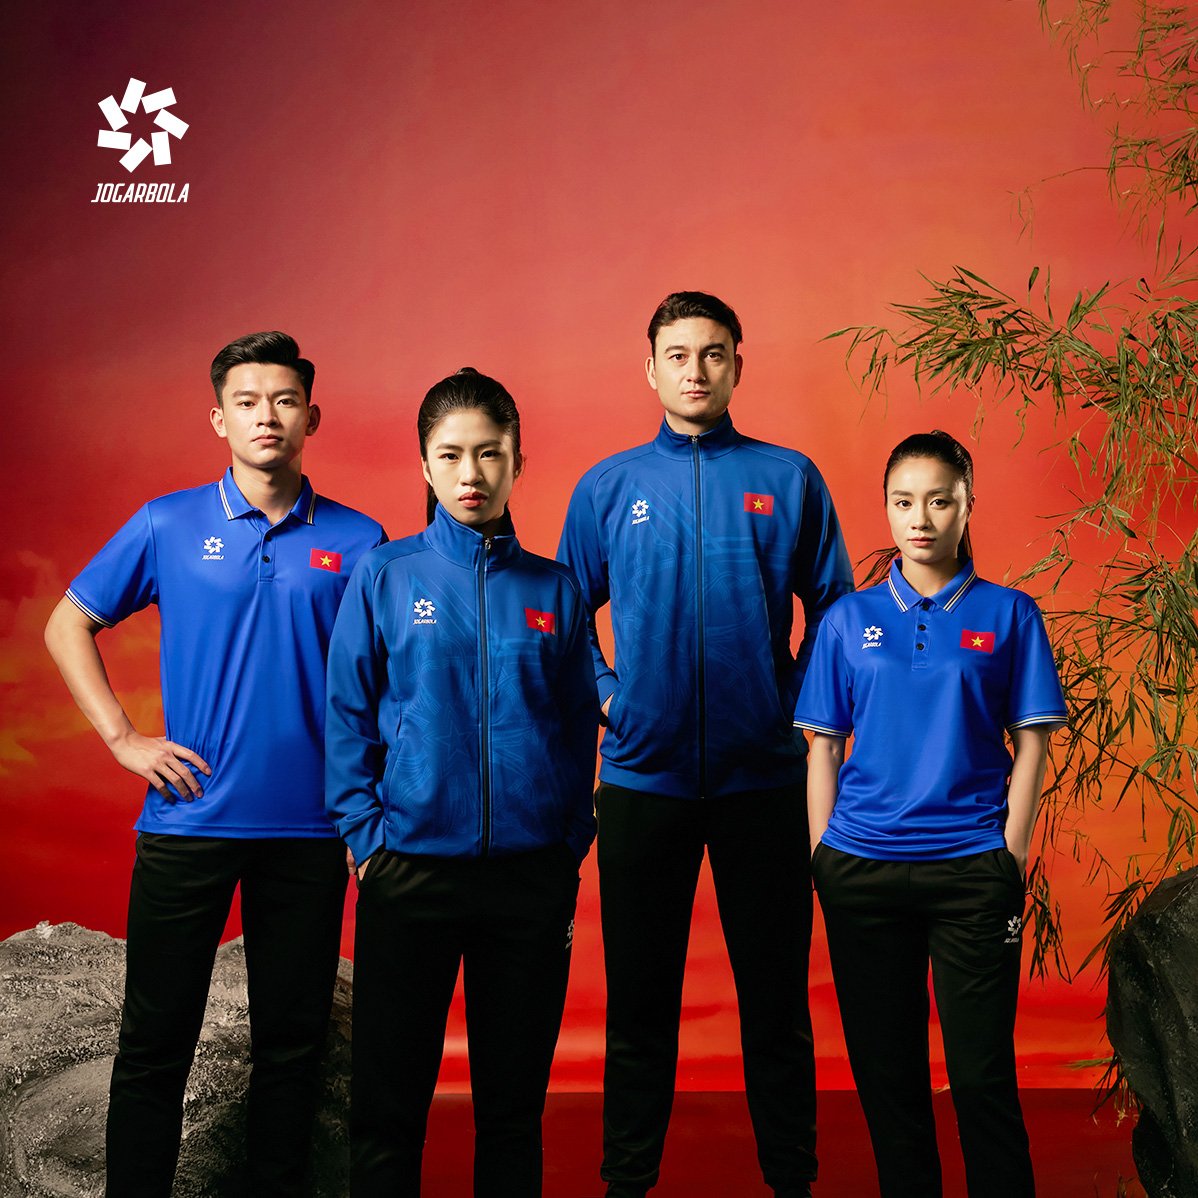 VIETNAM SPIRIT - Hào khí Việt Nam đậm nét trong BST Đội tuyển quốc gia từ thương hiệu Jogarbola